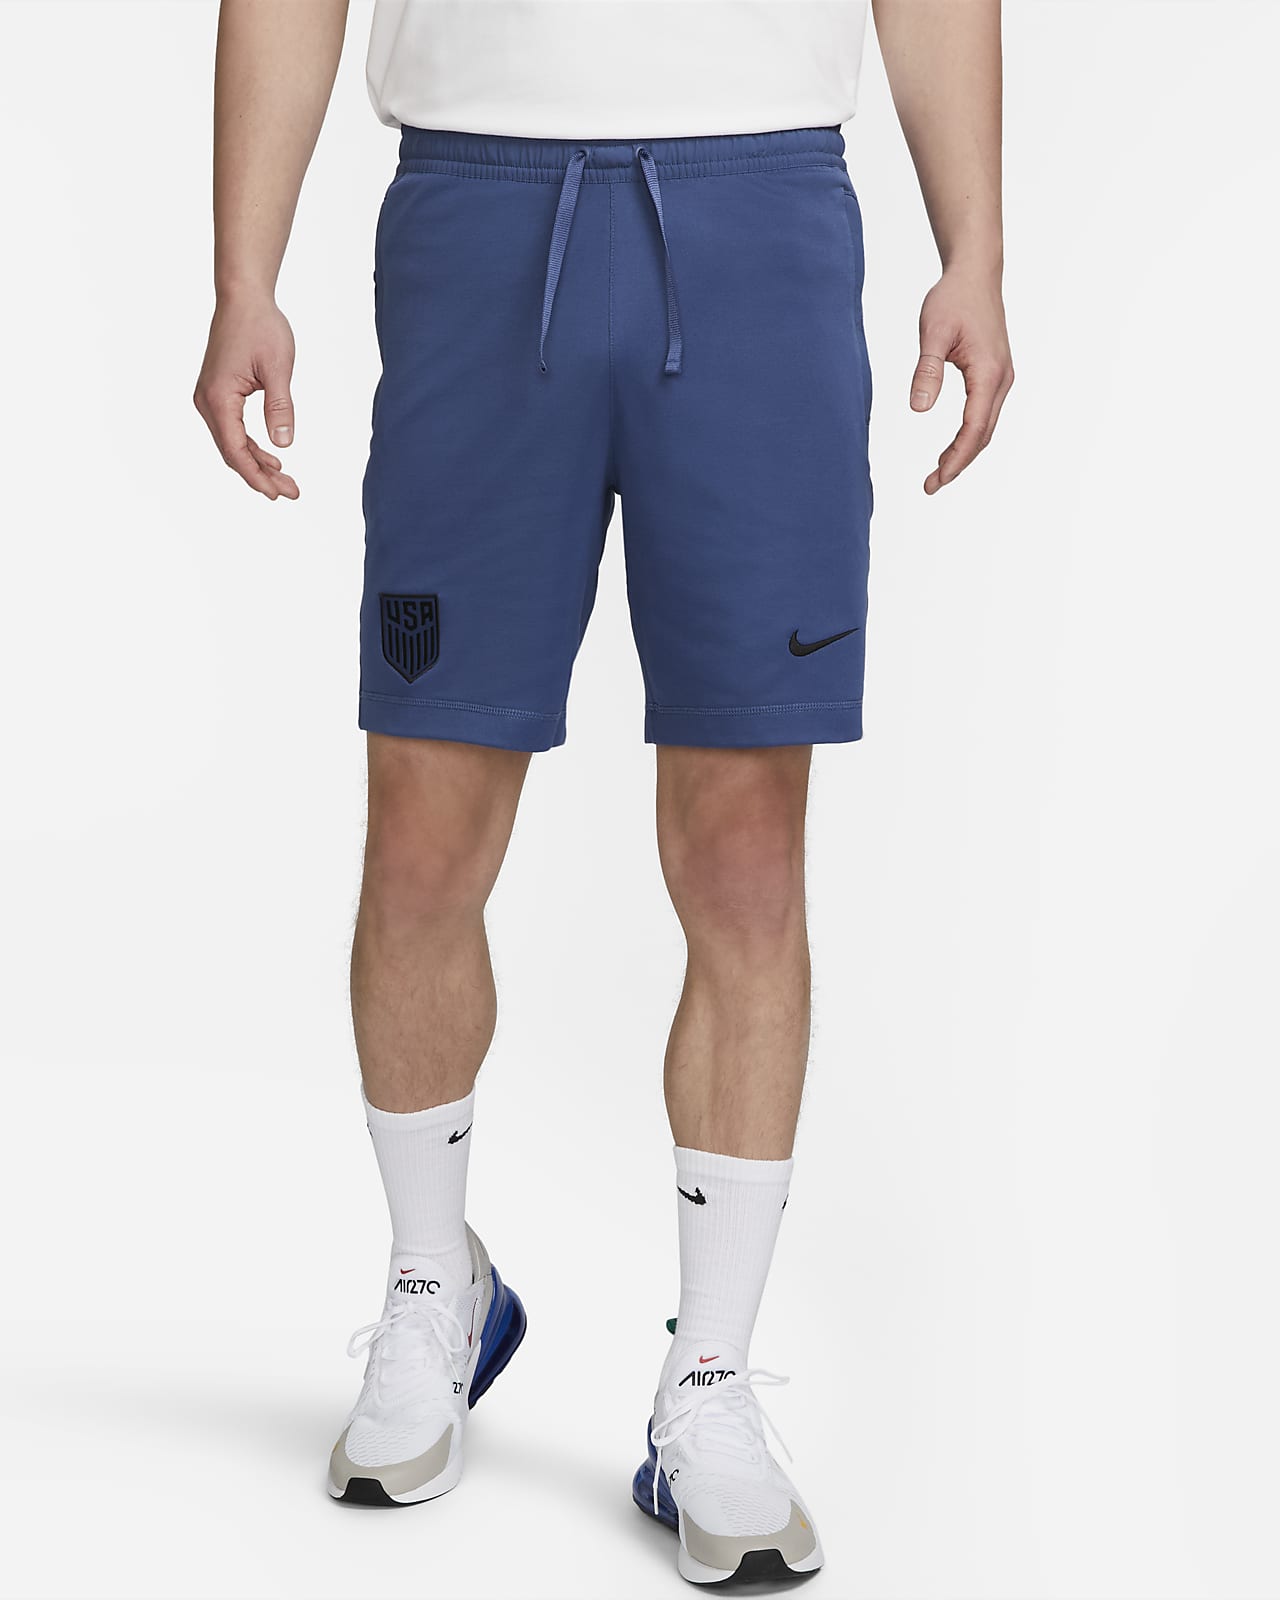 Shorts de fútbol Nike de tejido Knit para Travel. Nike.com